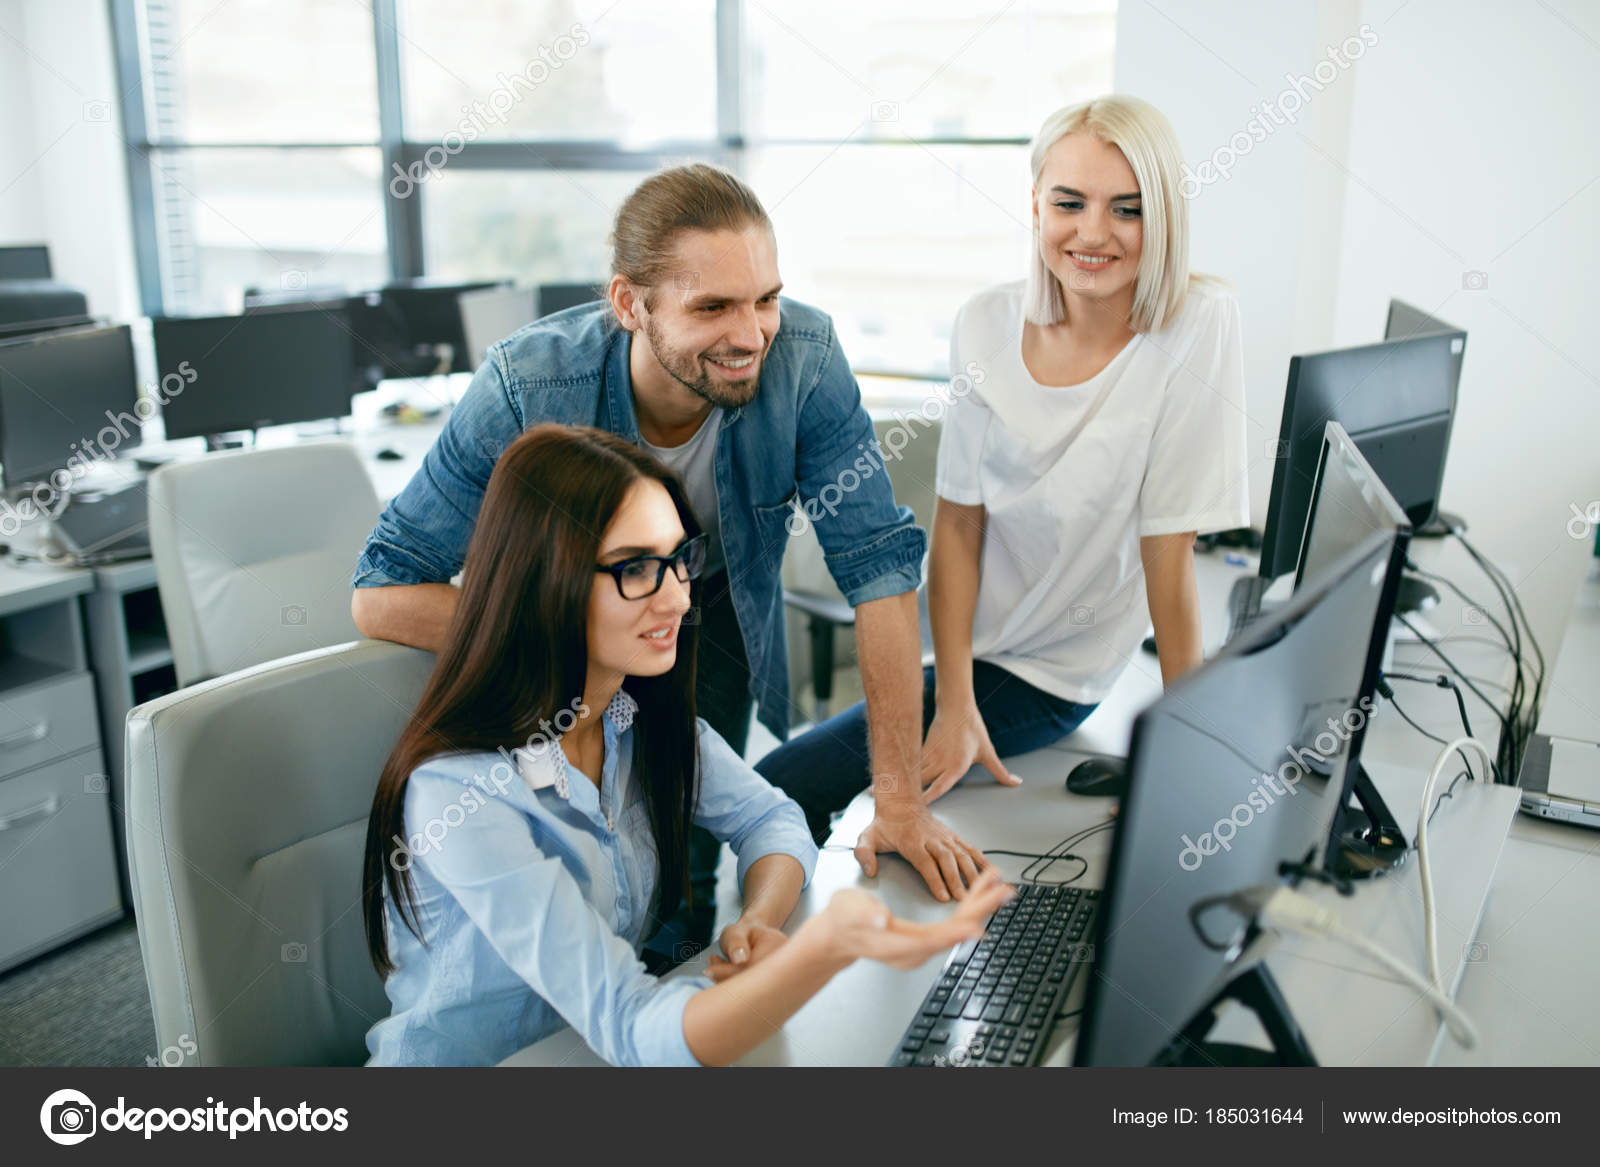 2 3 человека работающих на. Композиция люди в офисе. Картинка с людьми в офисе для описания. Модели посадки людей в офисе. Девушка с телефоном в руках в офисе.